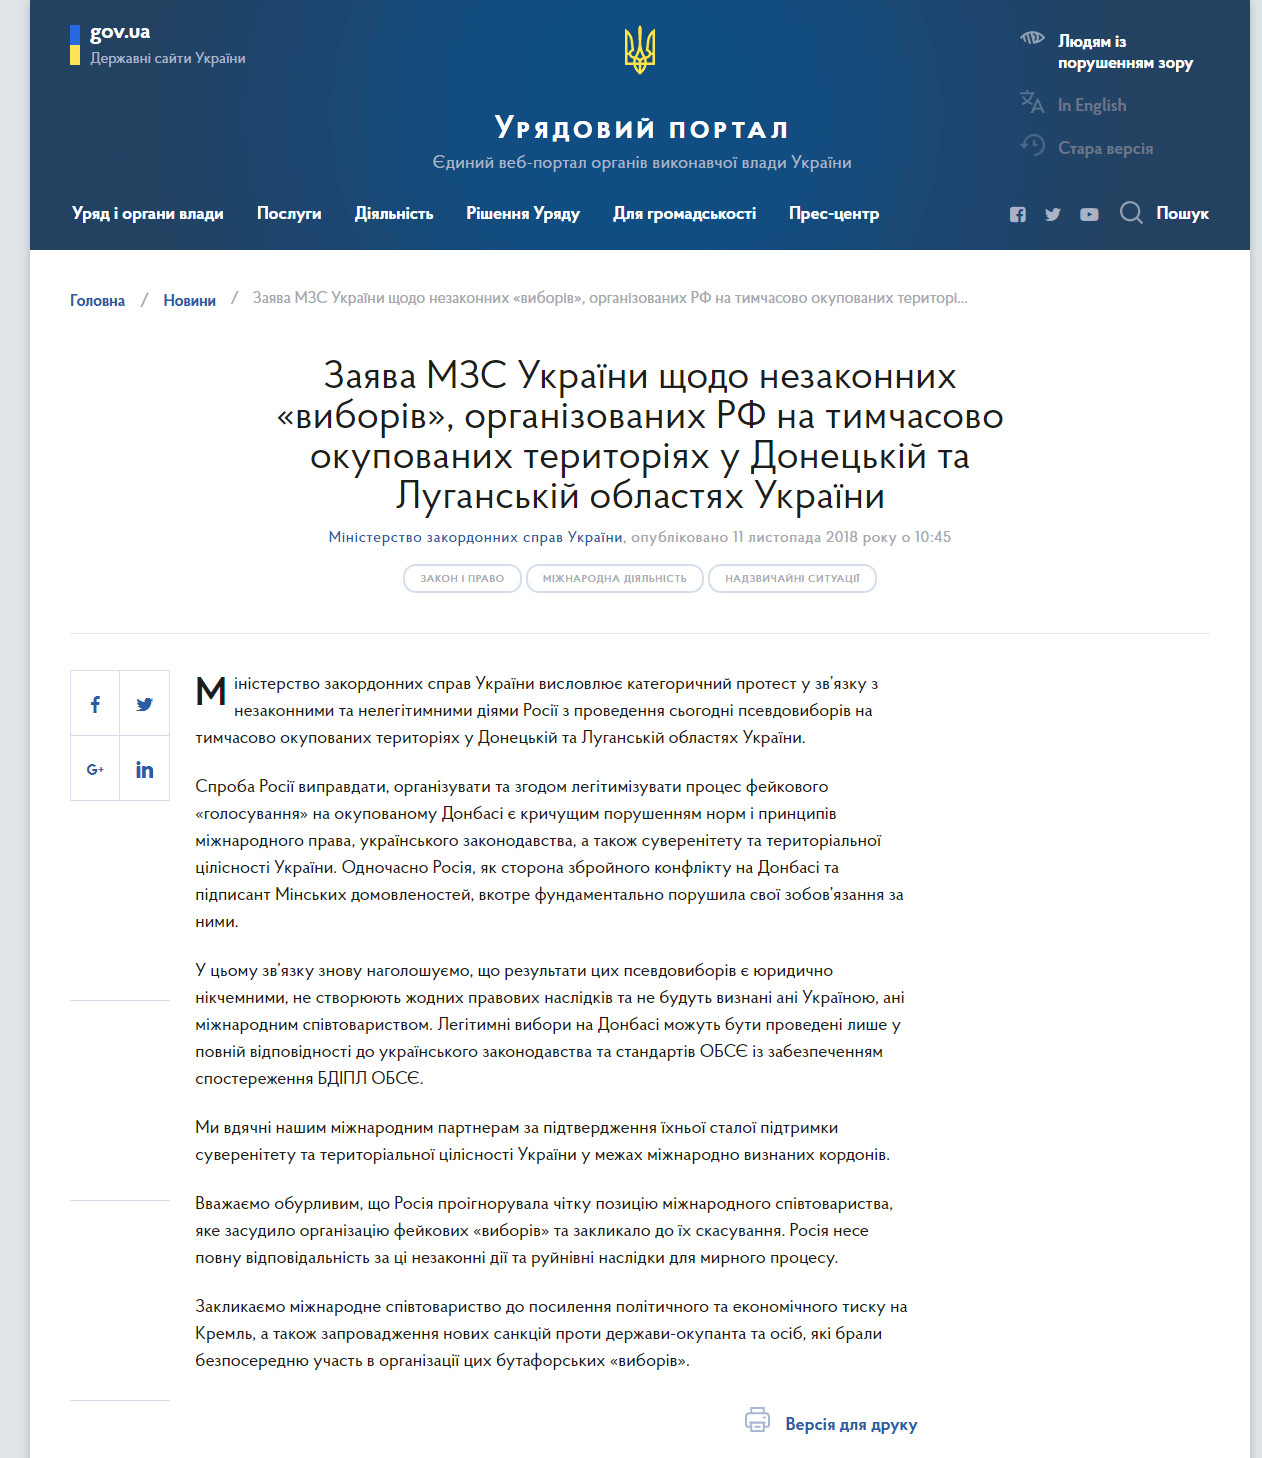 https://www.kmu.gov.ua/ua/news/zayava-mzs-ukrayini-shchodo-nezakonnih-viboriv-organizovanih-rf-na-timchasovo-okupovanih-teritoriyah-u-doneckij-ta-luganskij-oblastyah-ukrayini